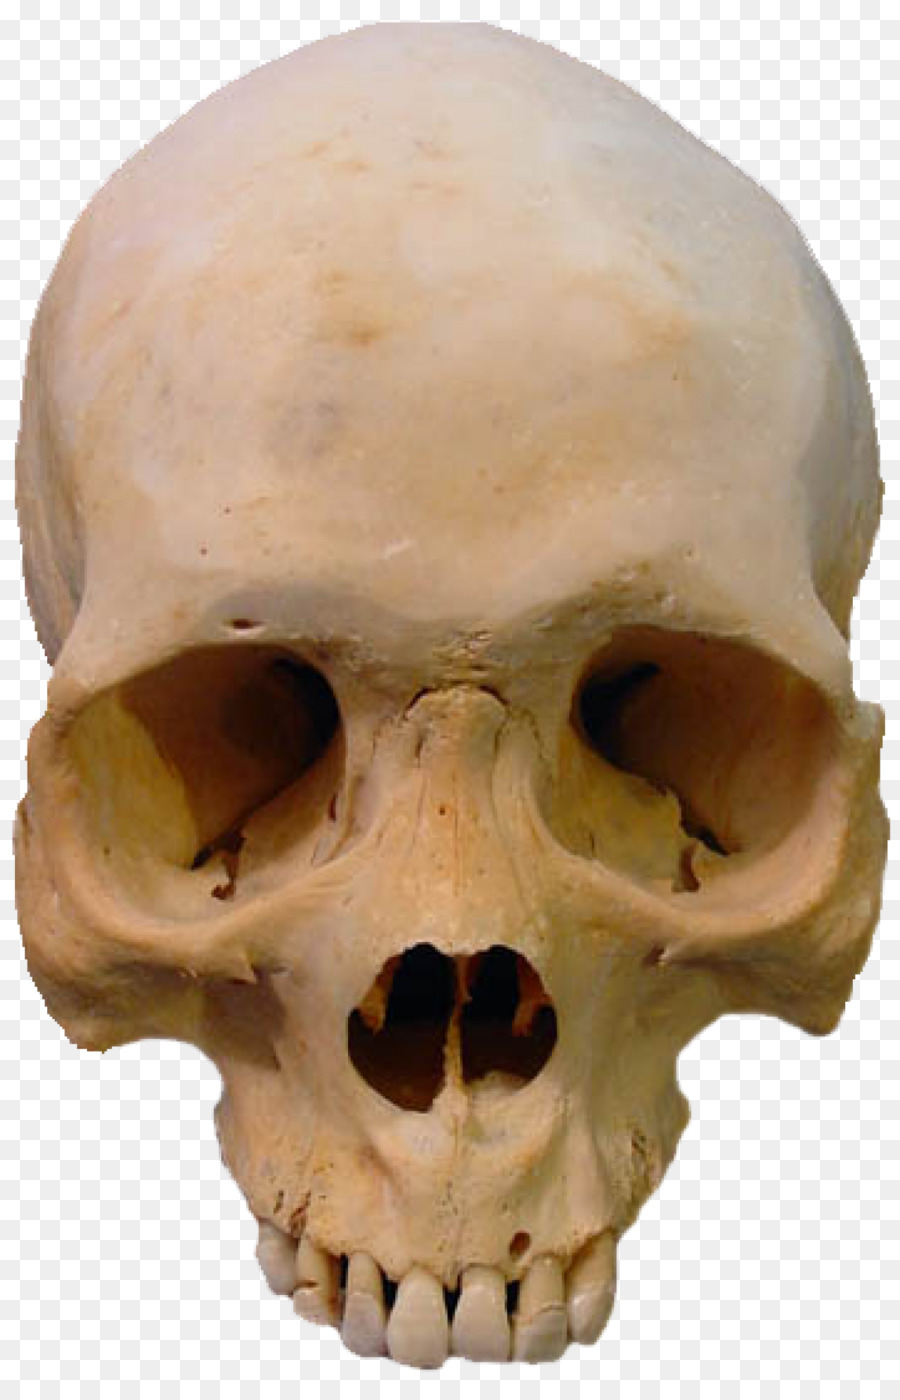 Skull Skeleton Clip art - skulls png download - 1200*1843 - Free Transparent Skull png Download.